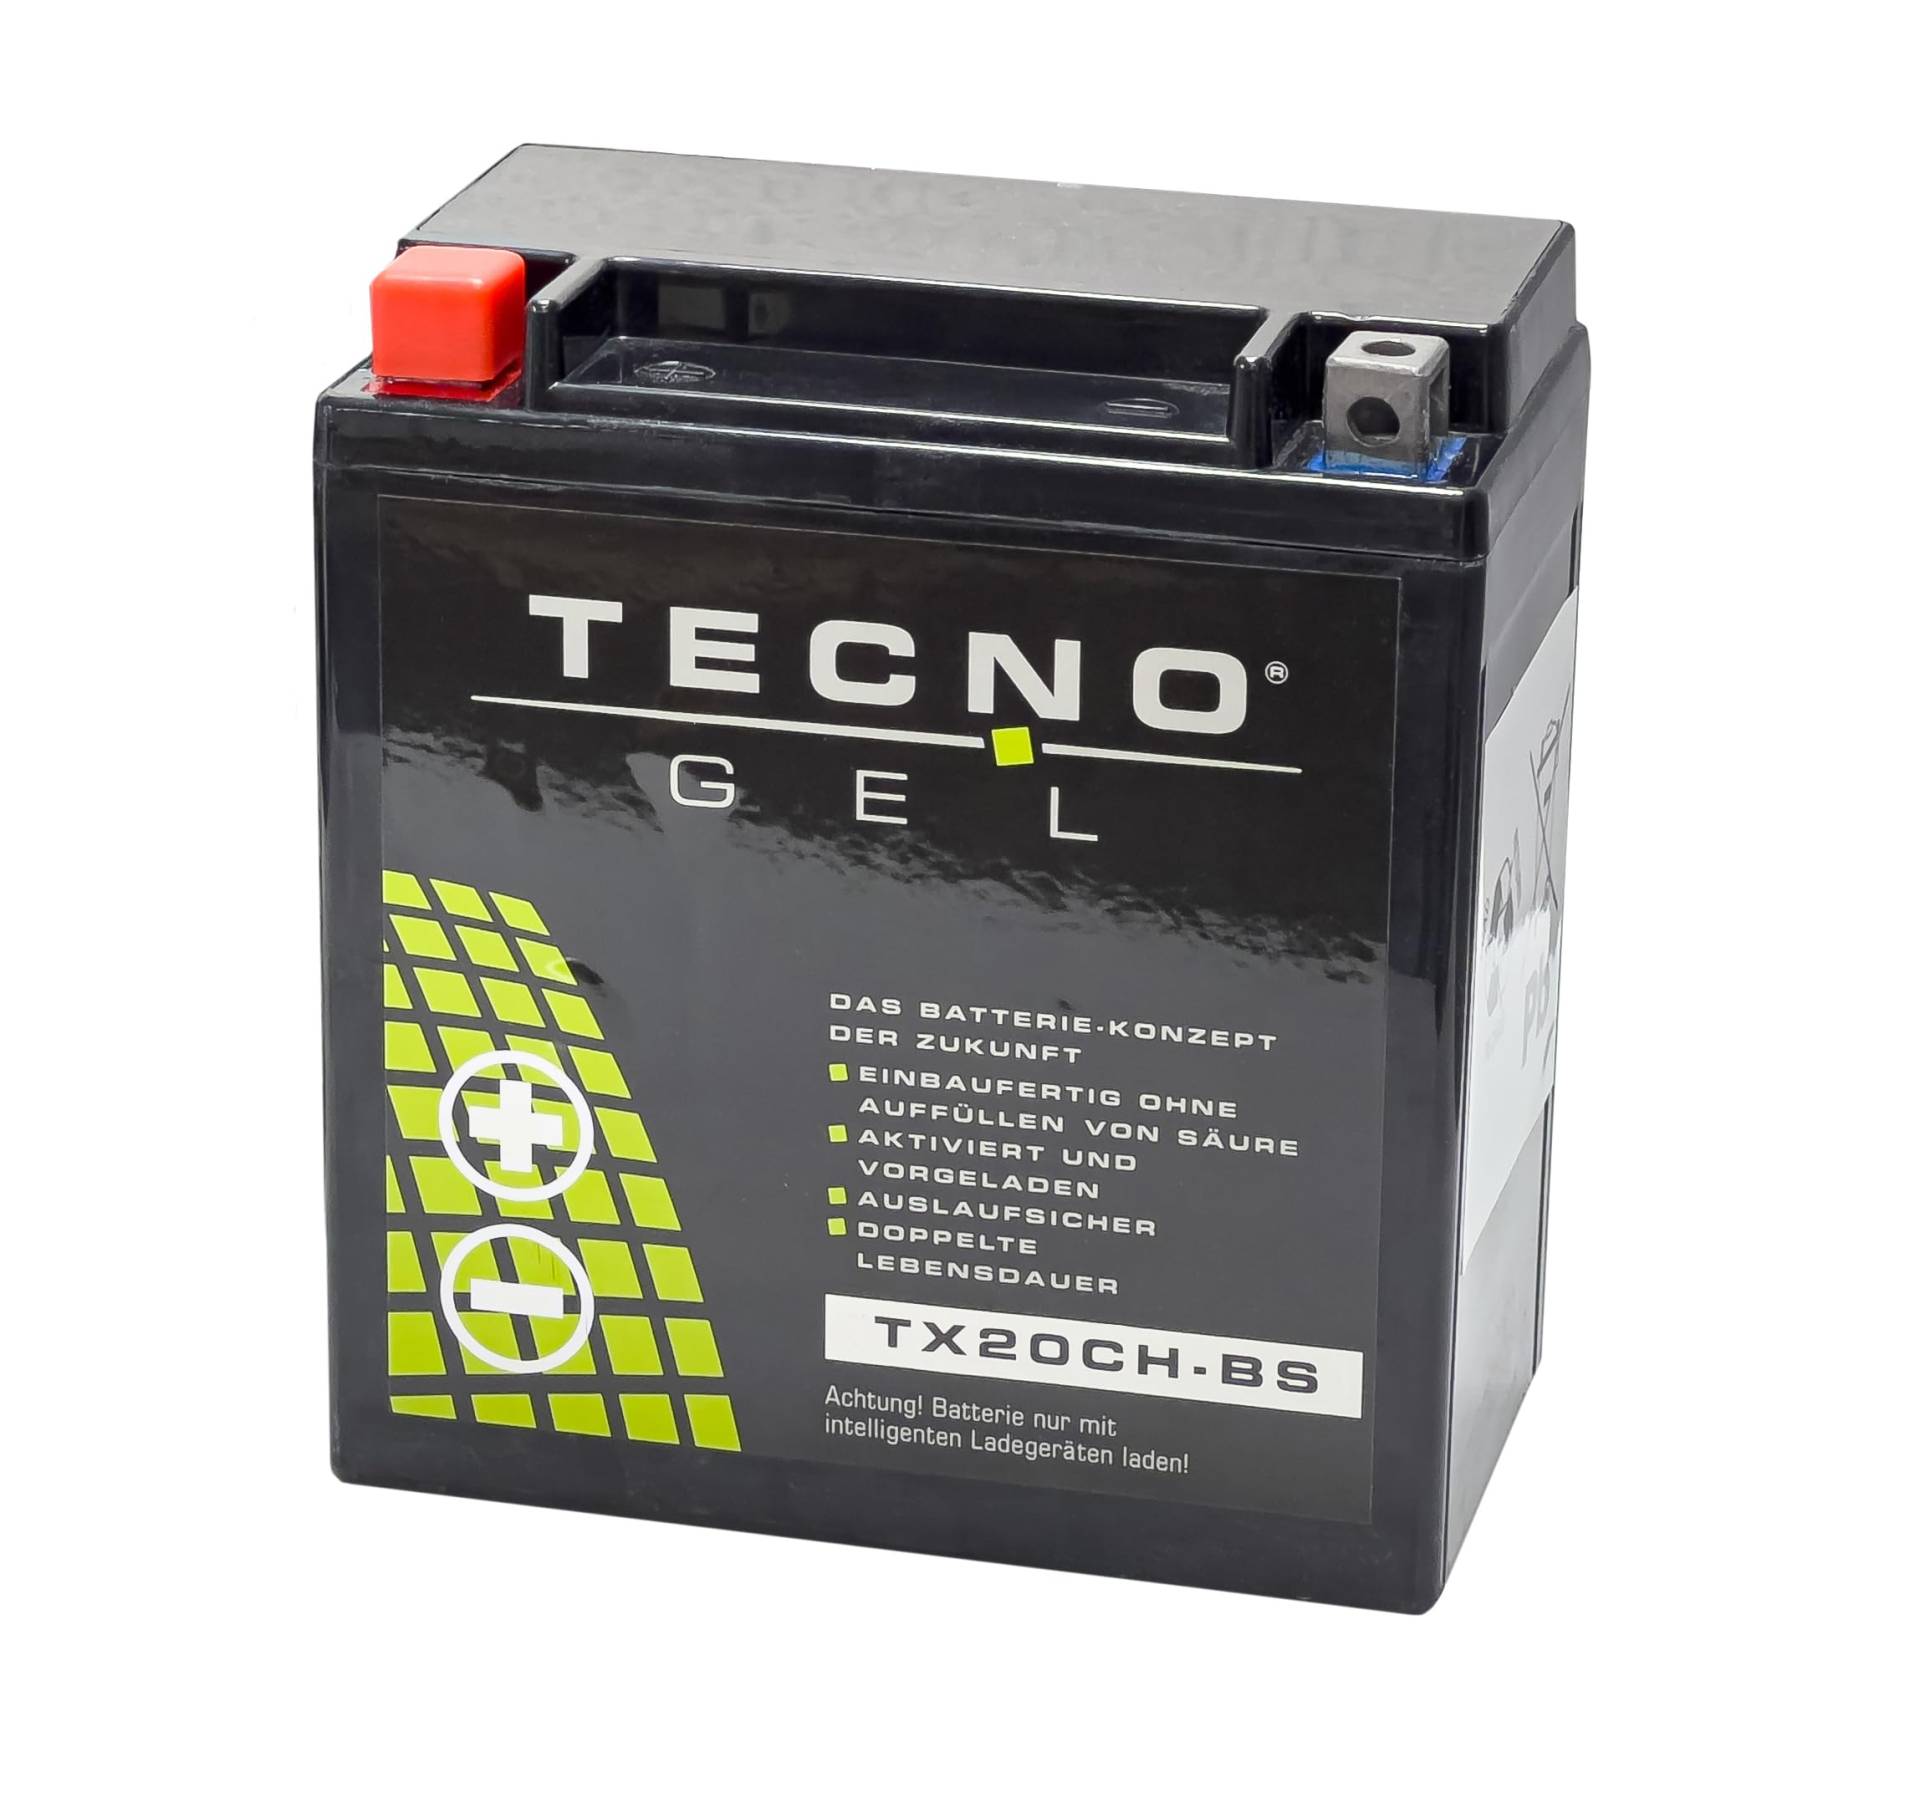 TECNO-GEL Motorrad-Batterie für YTX20CH-BS für KAWASAKI VN 1600 Classic, Tourer, Mean Streak 2003-2008, 12V Gel-Batterie 18AH, 150x87x161 mm von Wirth-Federn